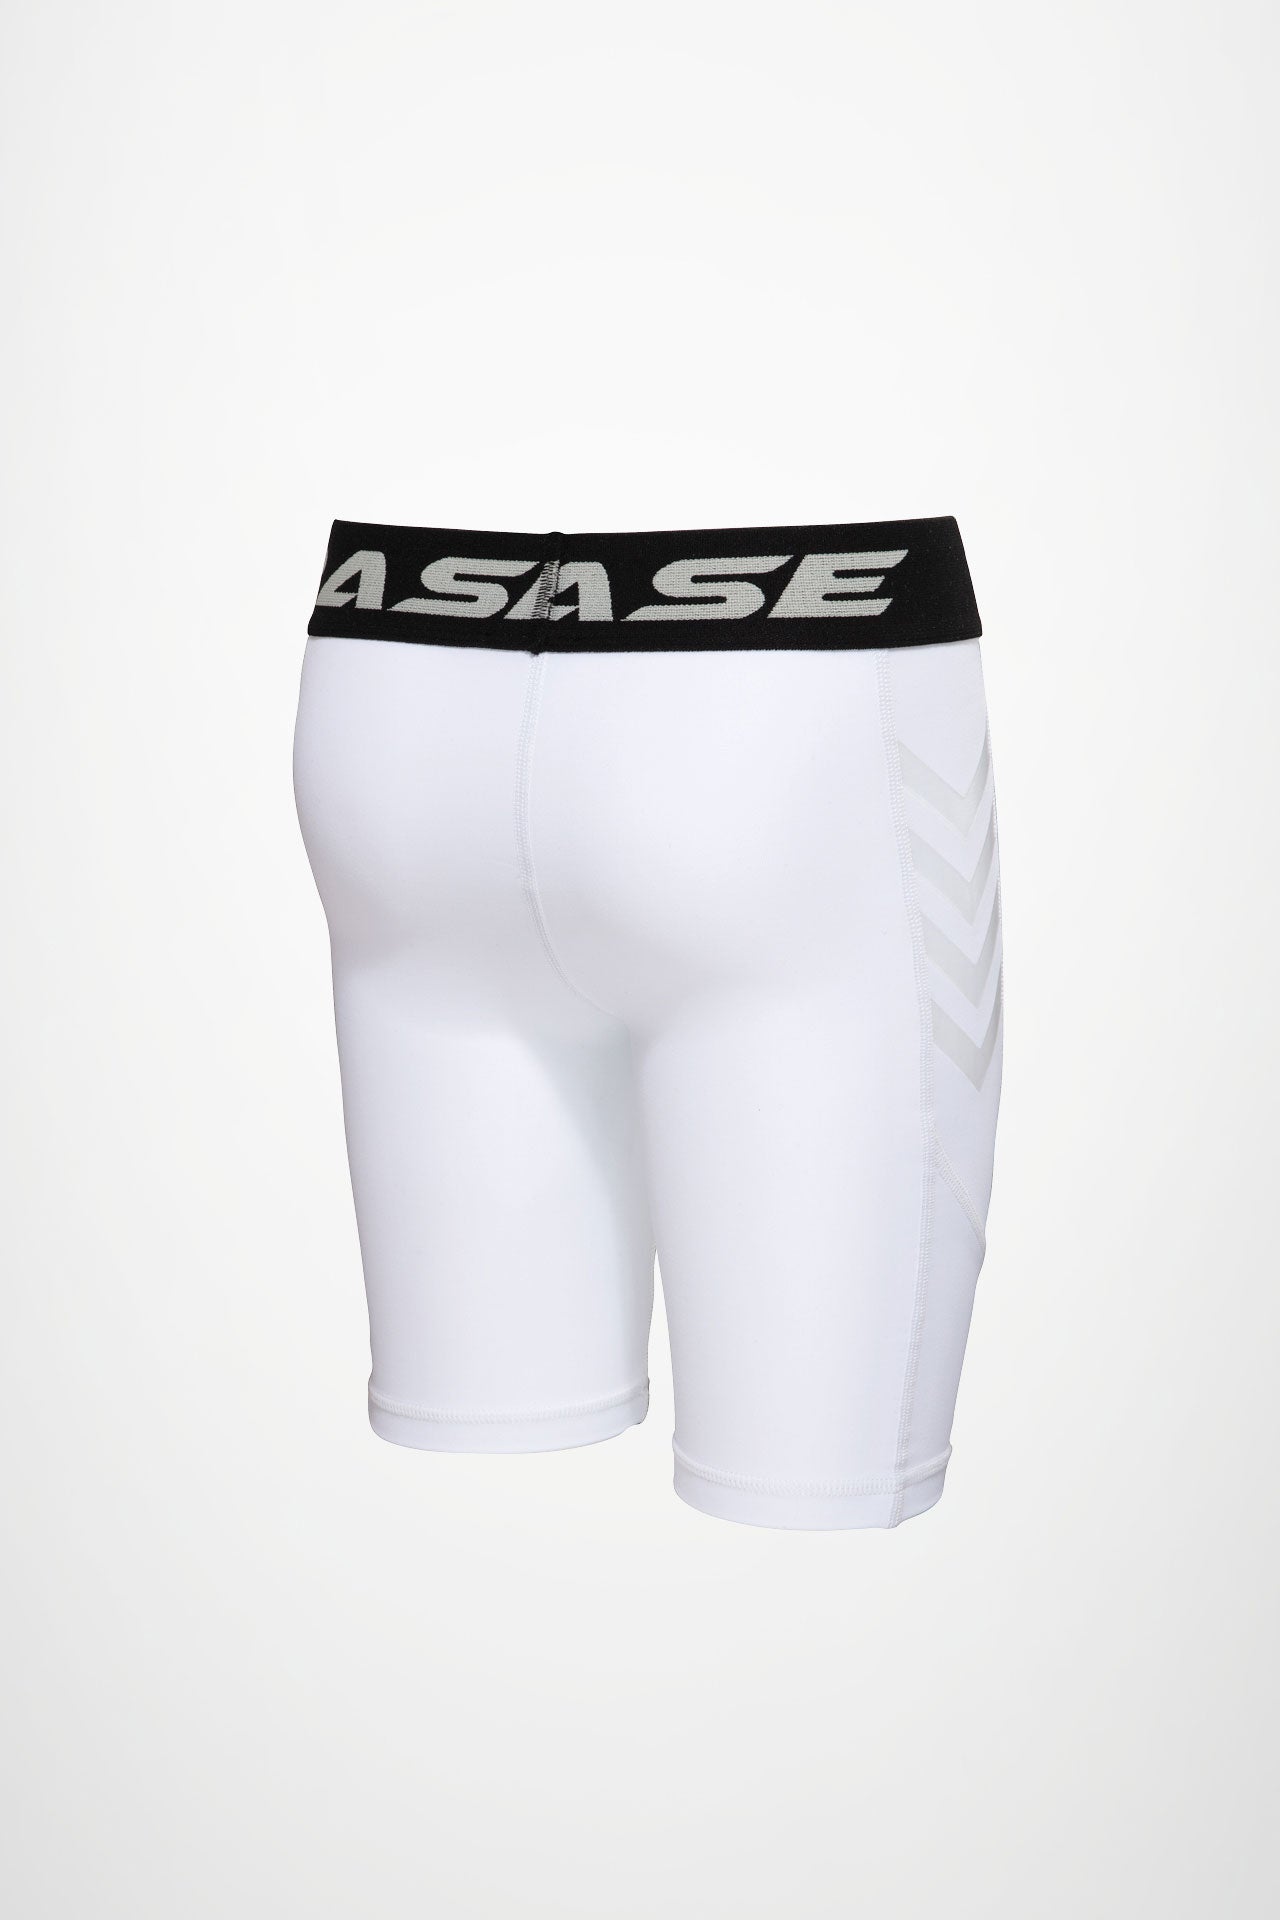 BASE Shorts BASE Youth Compression Shorts - White